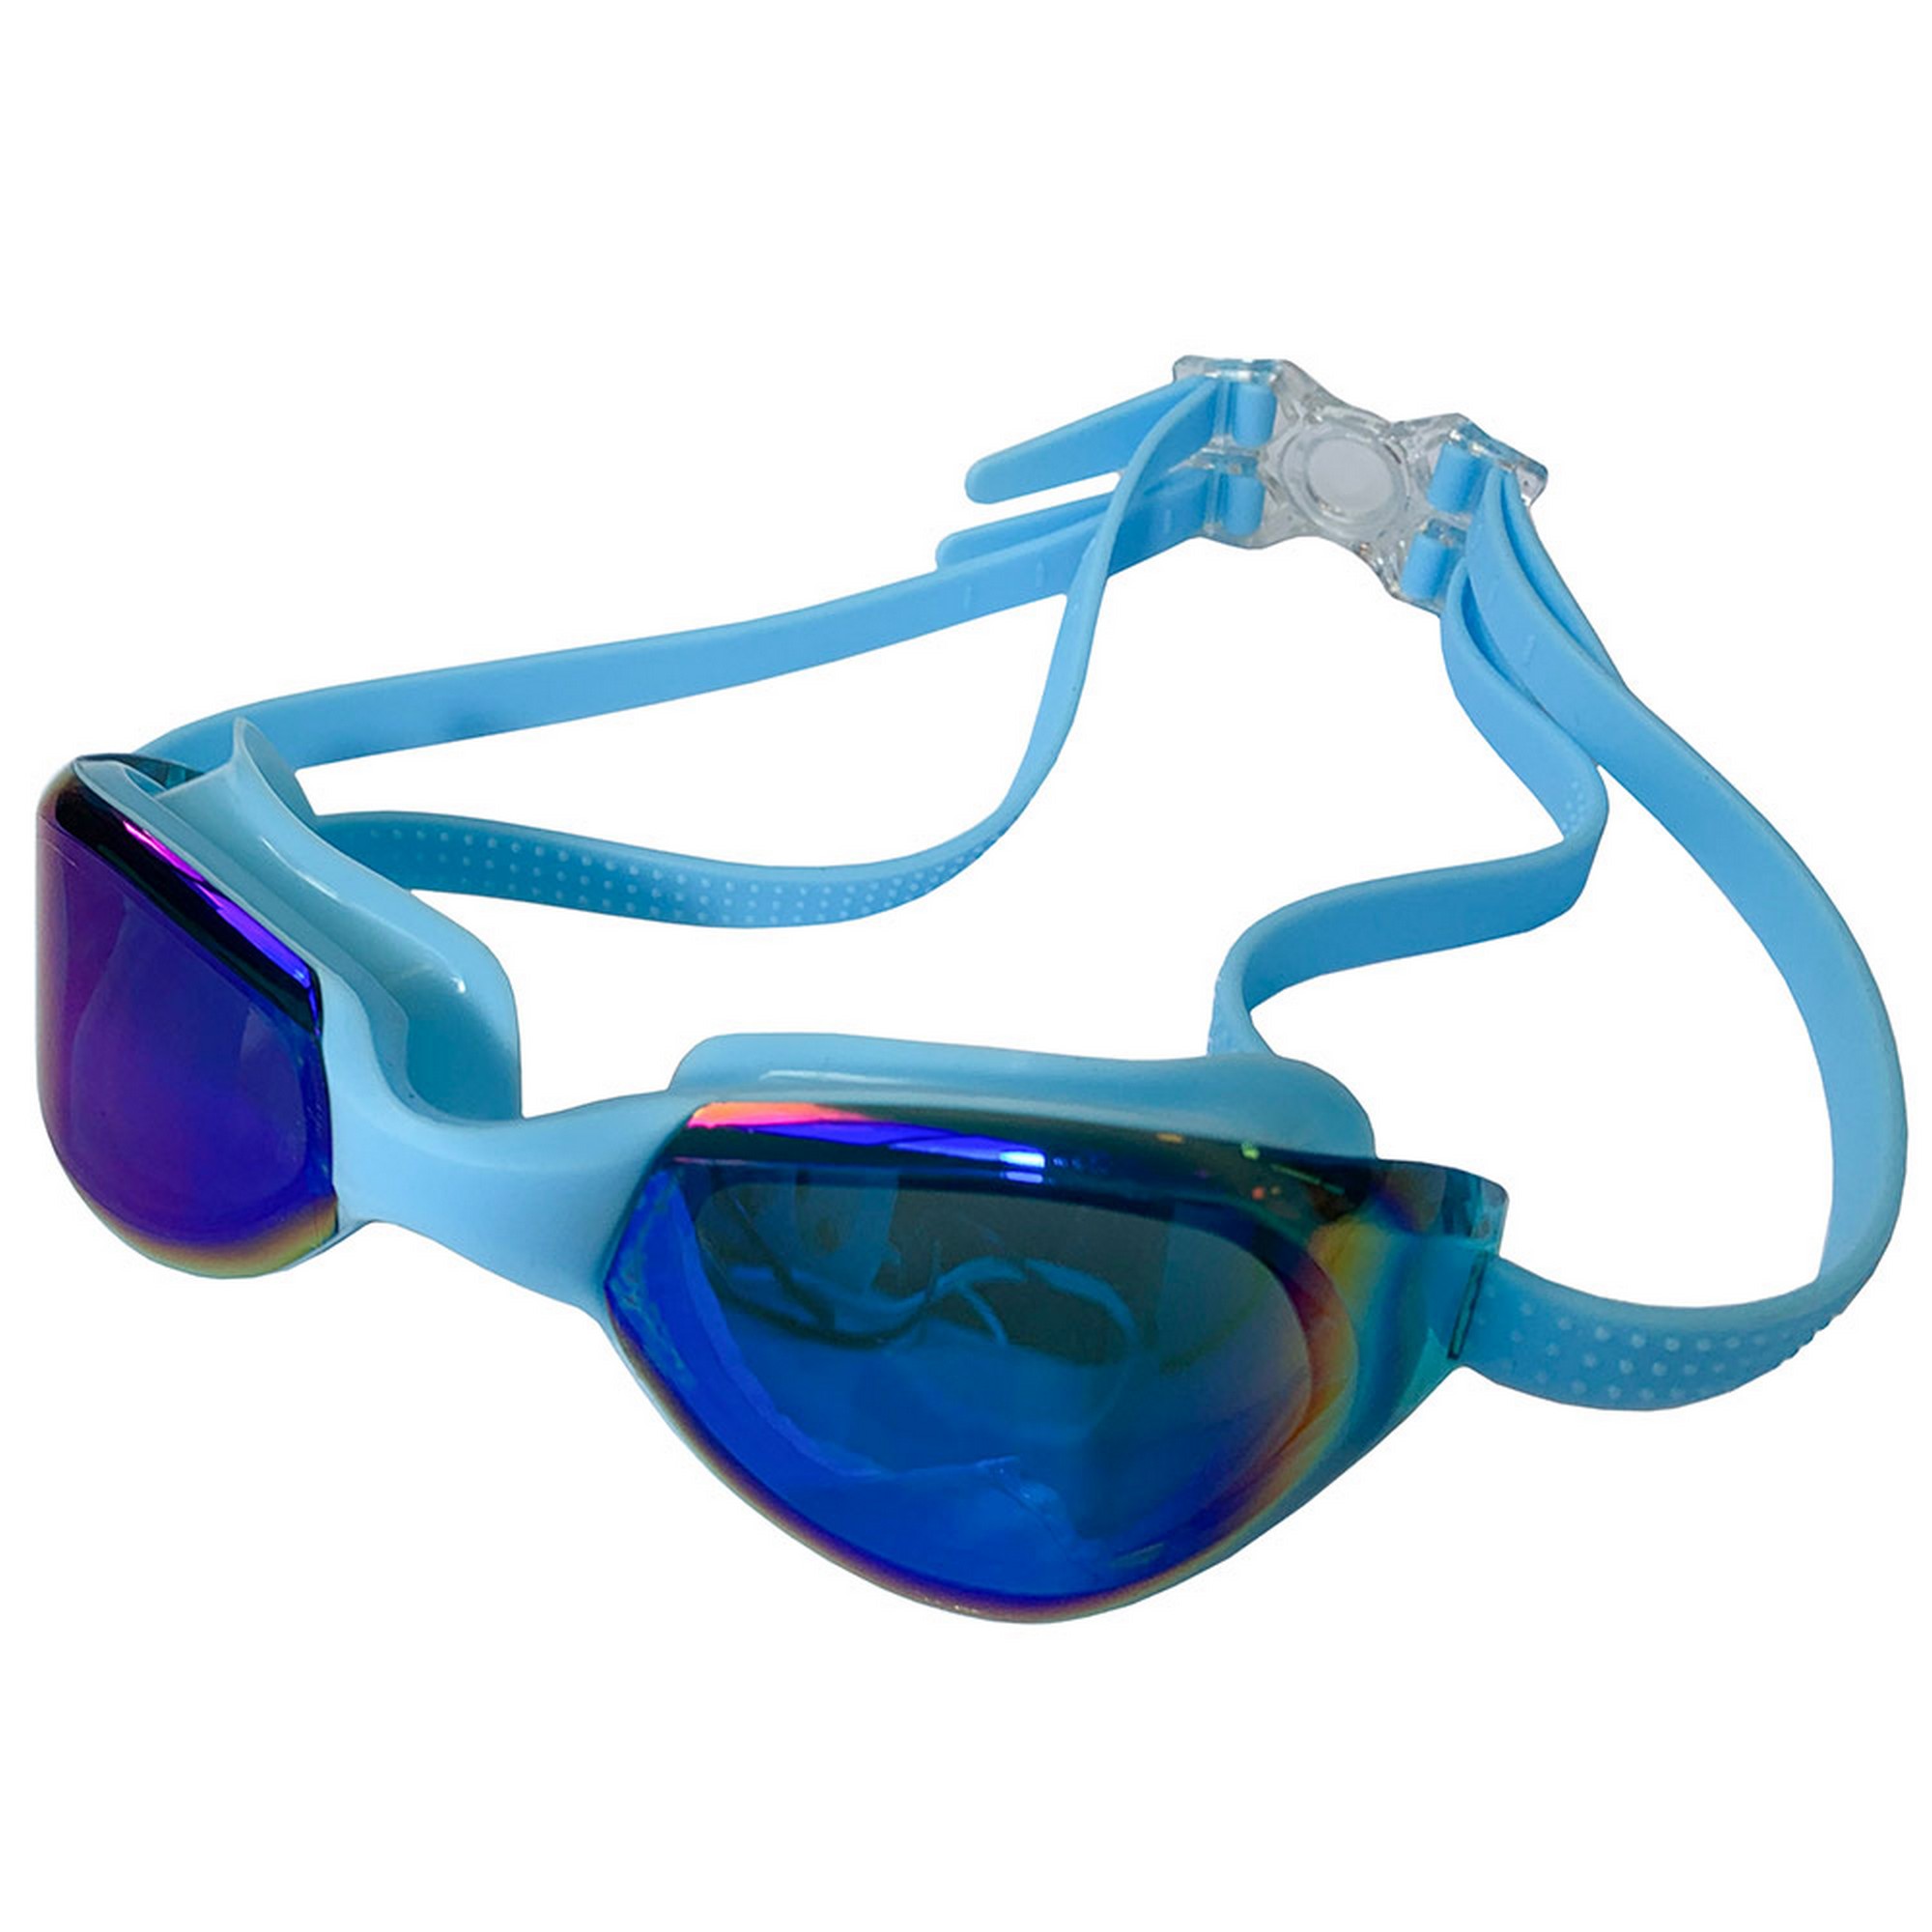 Очки для плавания Sportex взрослые, зеркальные E33119-0 голубой,  - купить со скидкой